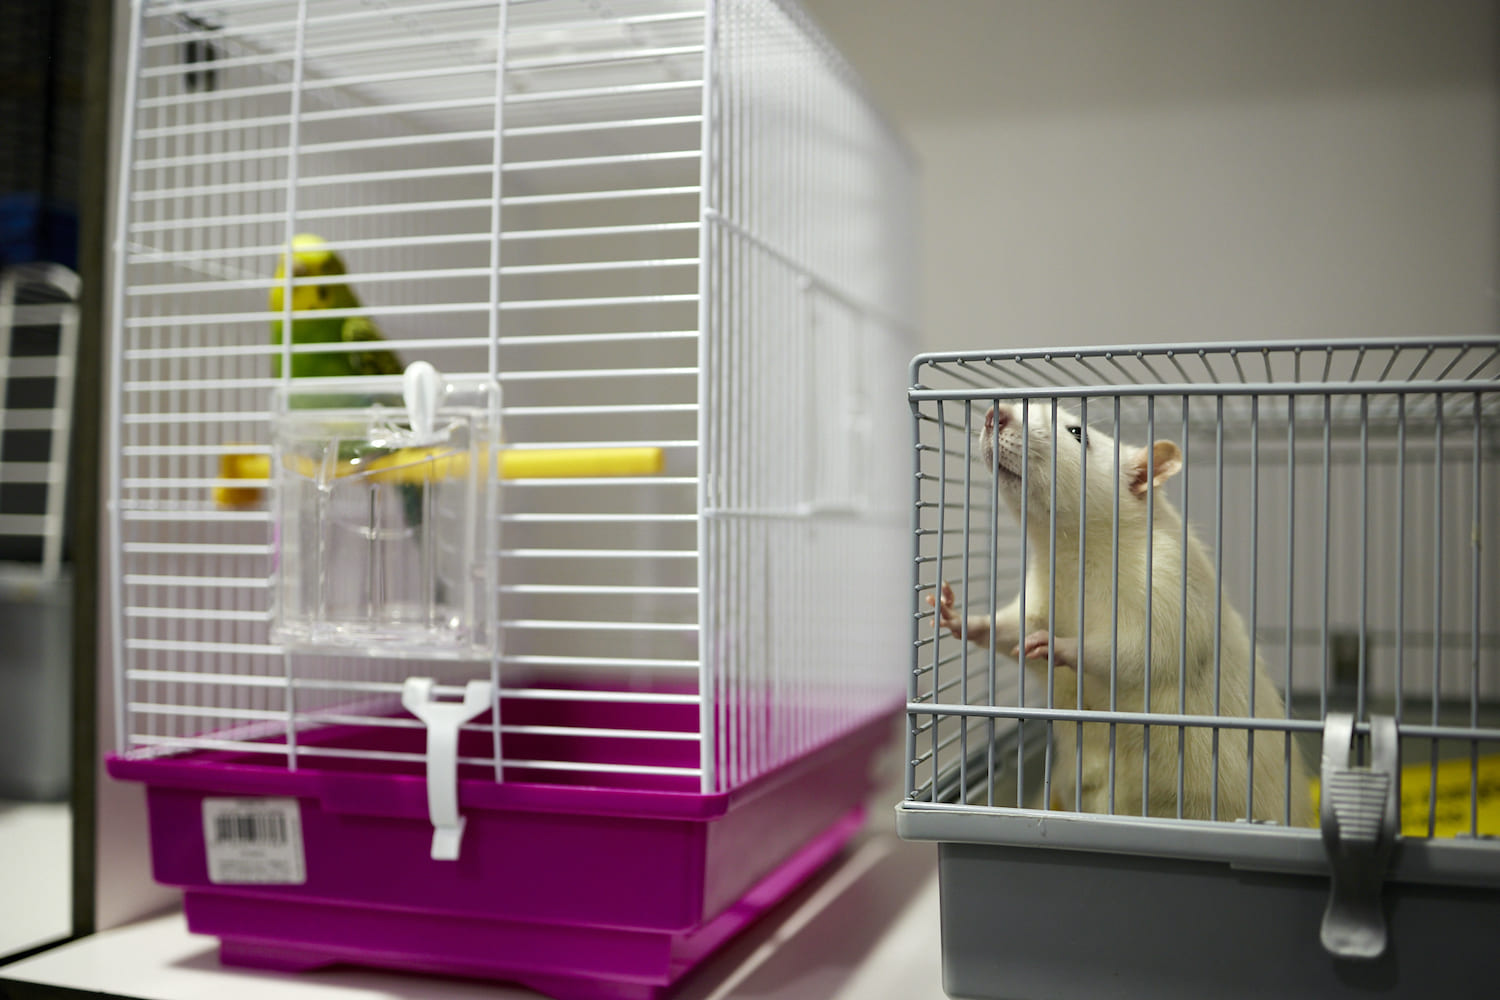 Hospitalización hamster y loro en veterinaria.